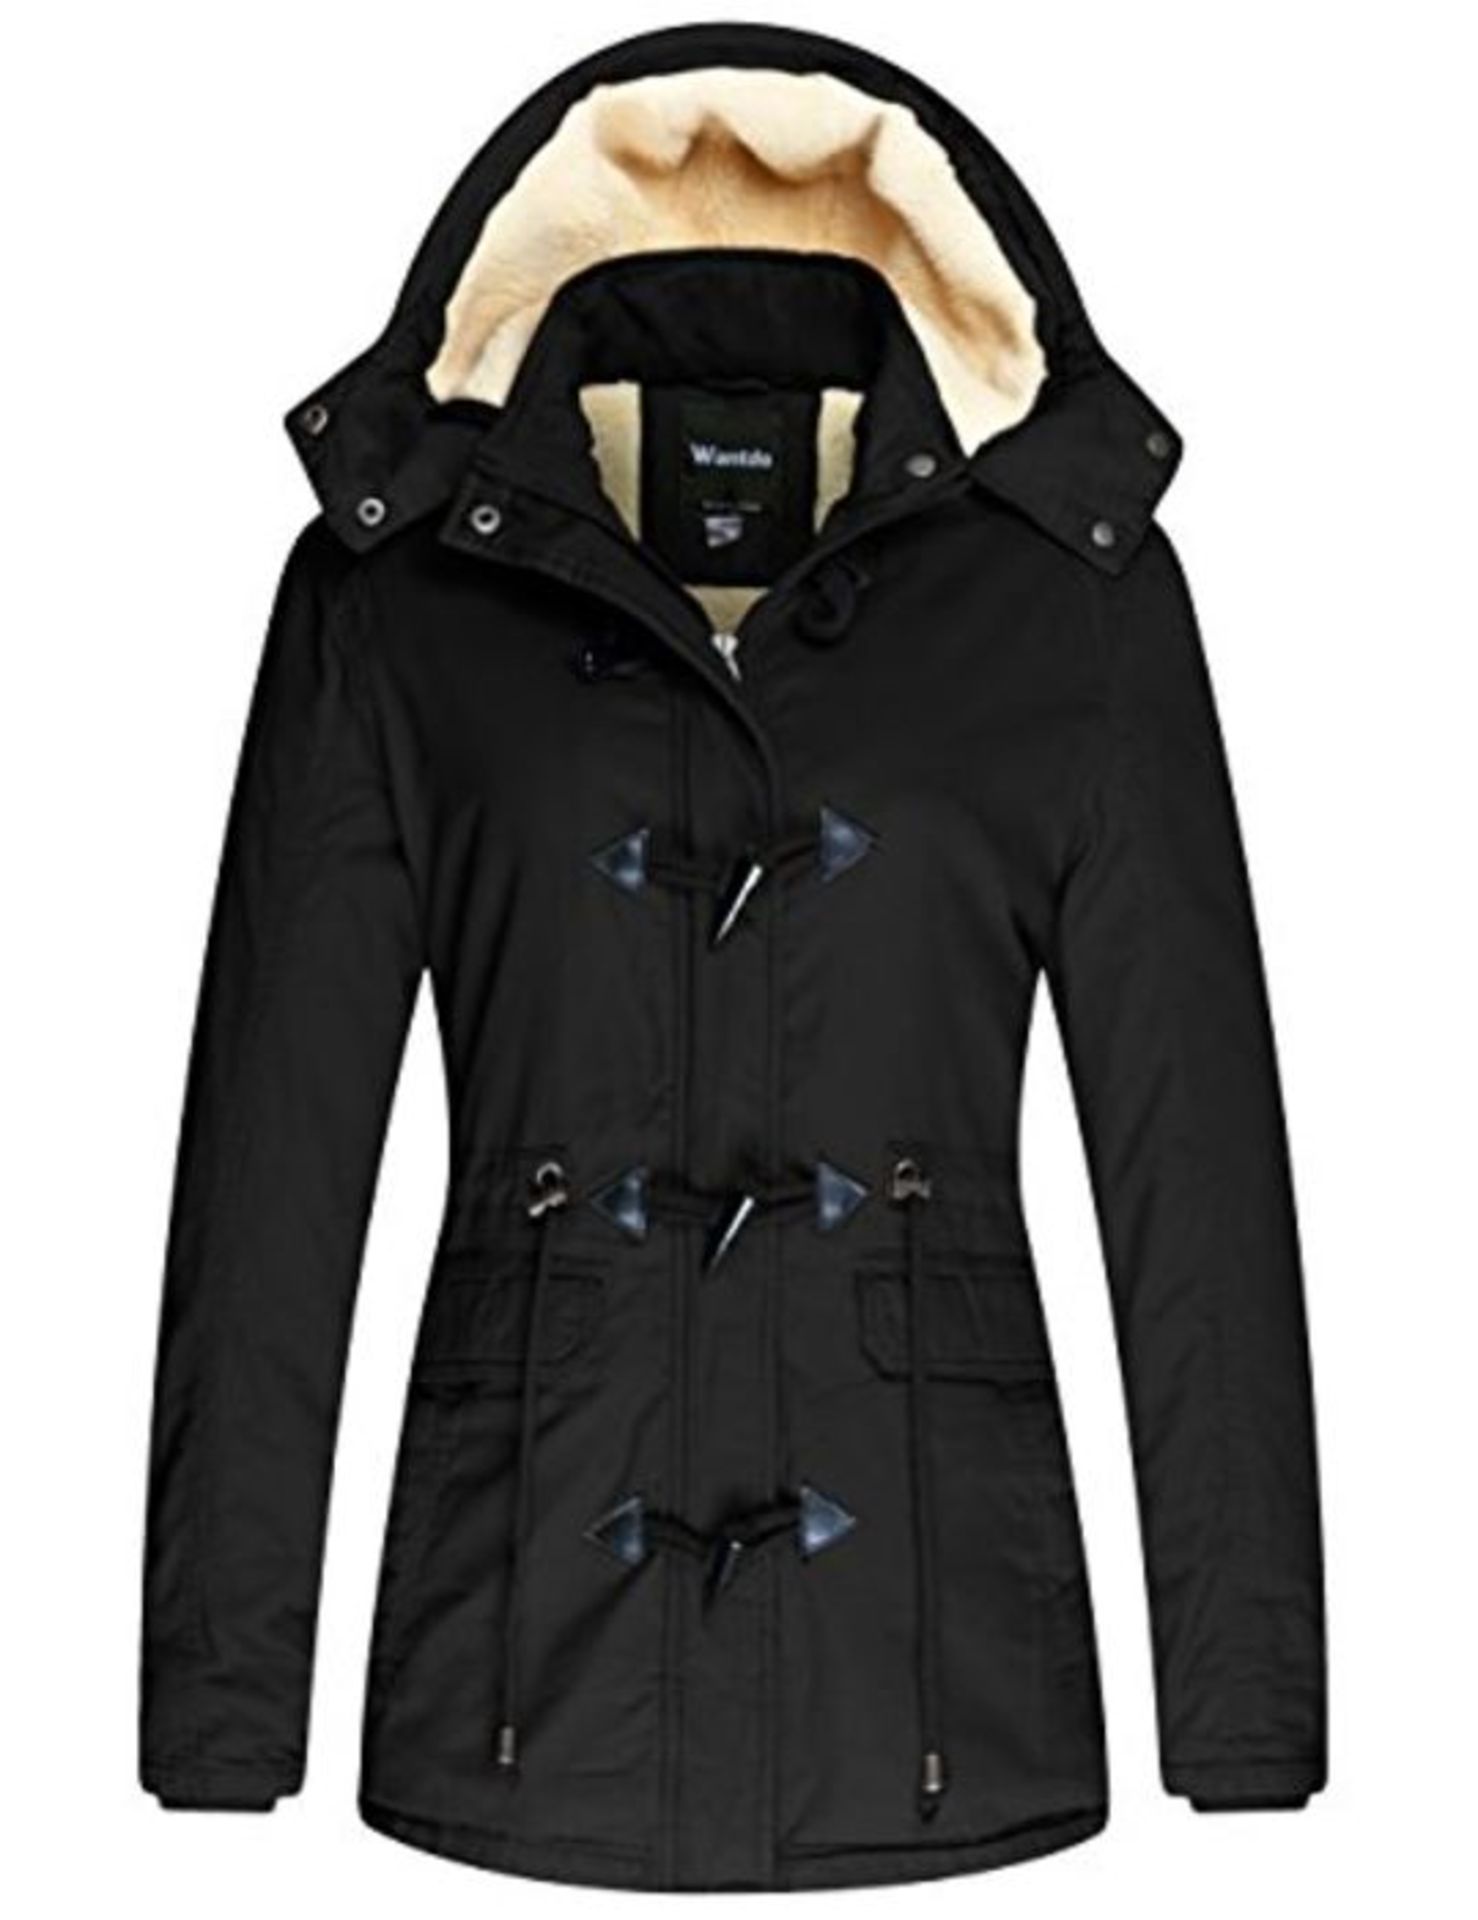 RRP £74.00 Wantdo Women's Windproof Warm Coat Winter Casual Fleece Coat Classic Cotton Hoodie Jac